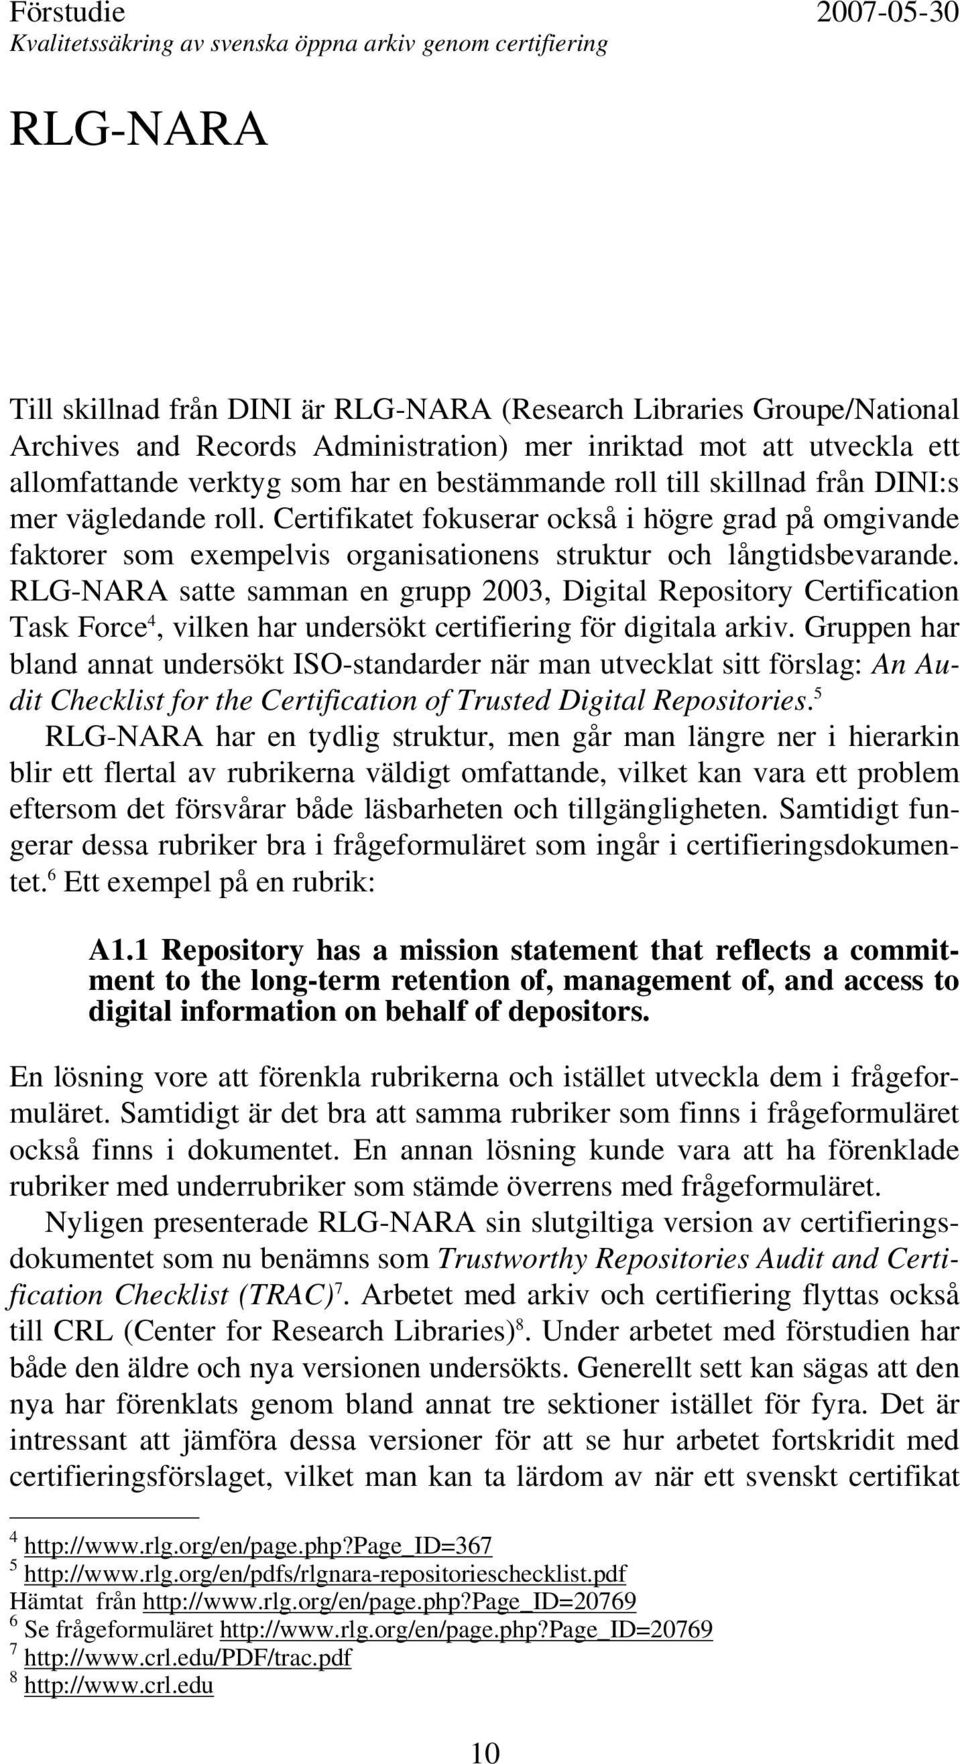 RLG-NARA satte samman en grupp 2003, Digital Repository Certification Task Force 4, vilken har undersökt certifiering för digitala arkiv.